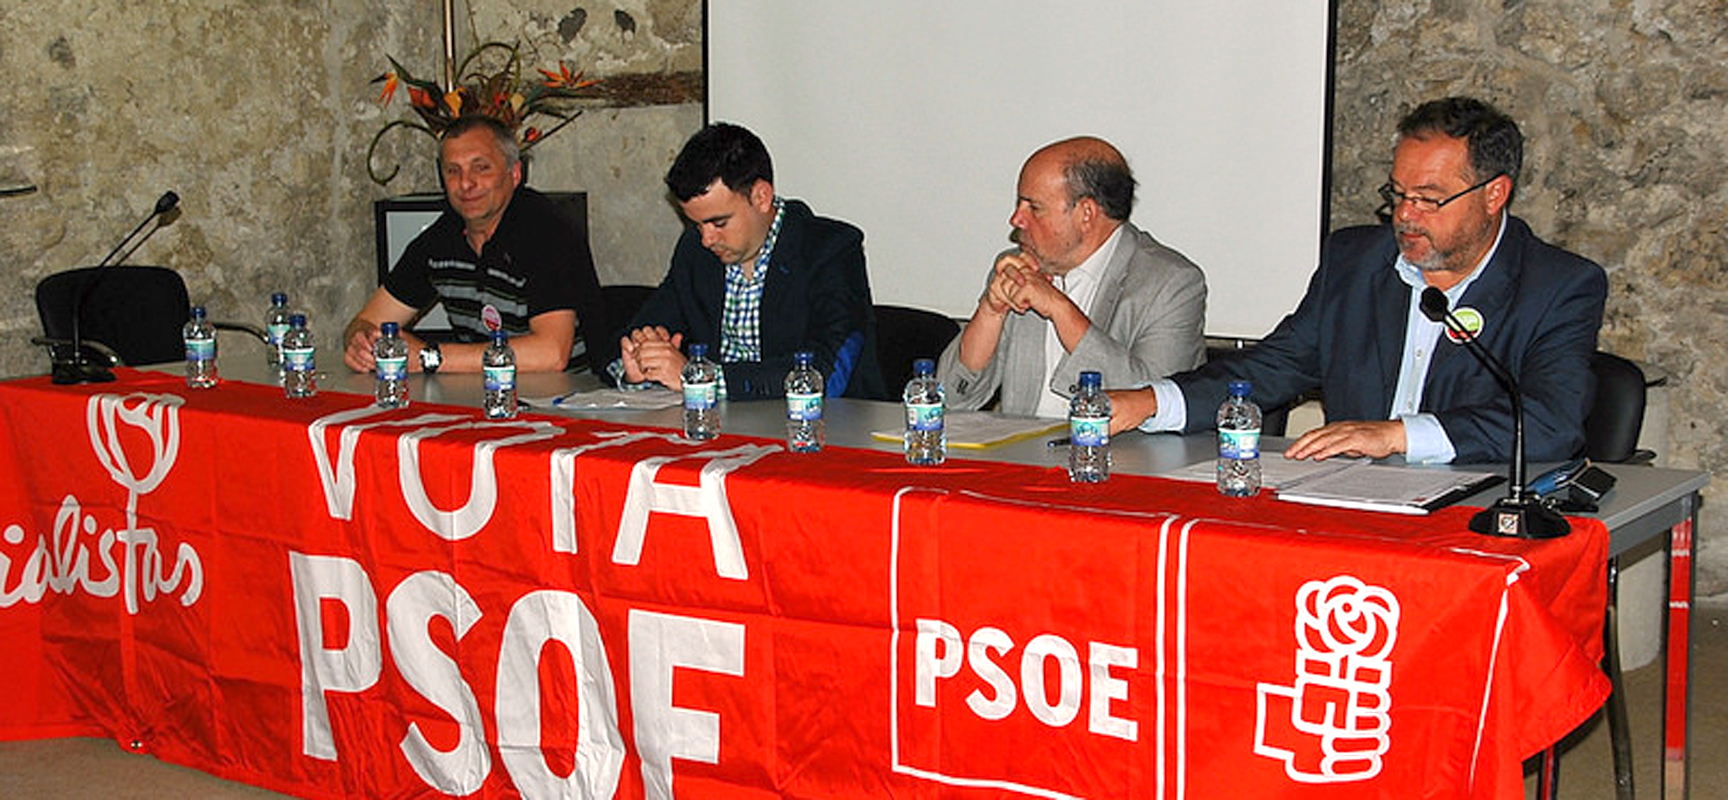 El Palacio de Pedro I acogió el acto electoral socialista. |Foto: PSOE Segovia|